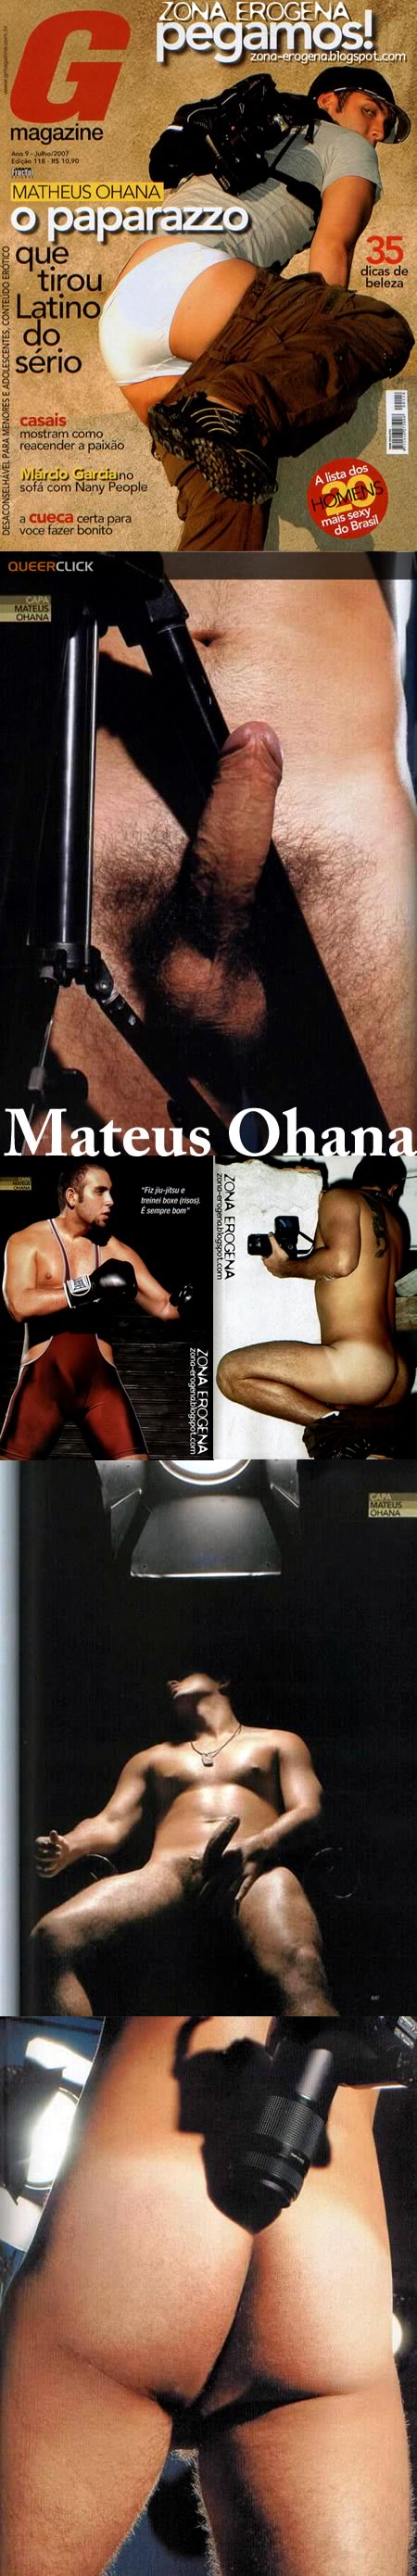 Matheus Ohana Naked For G Magazine